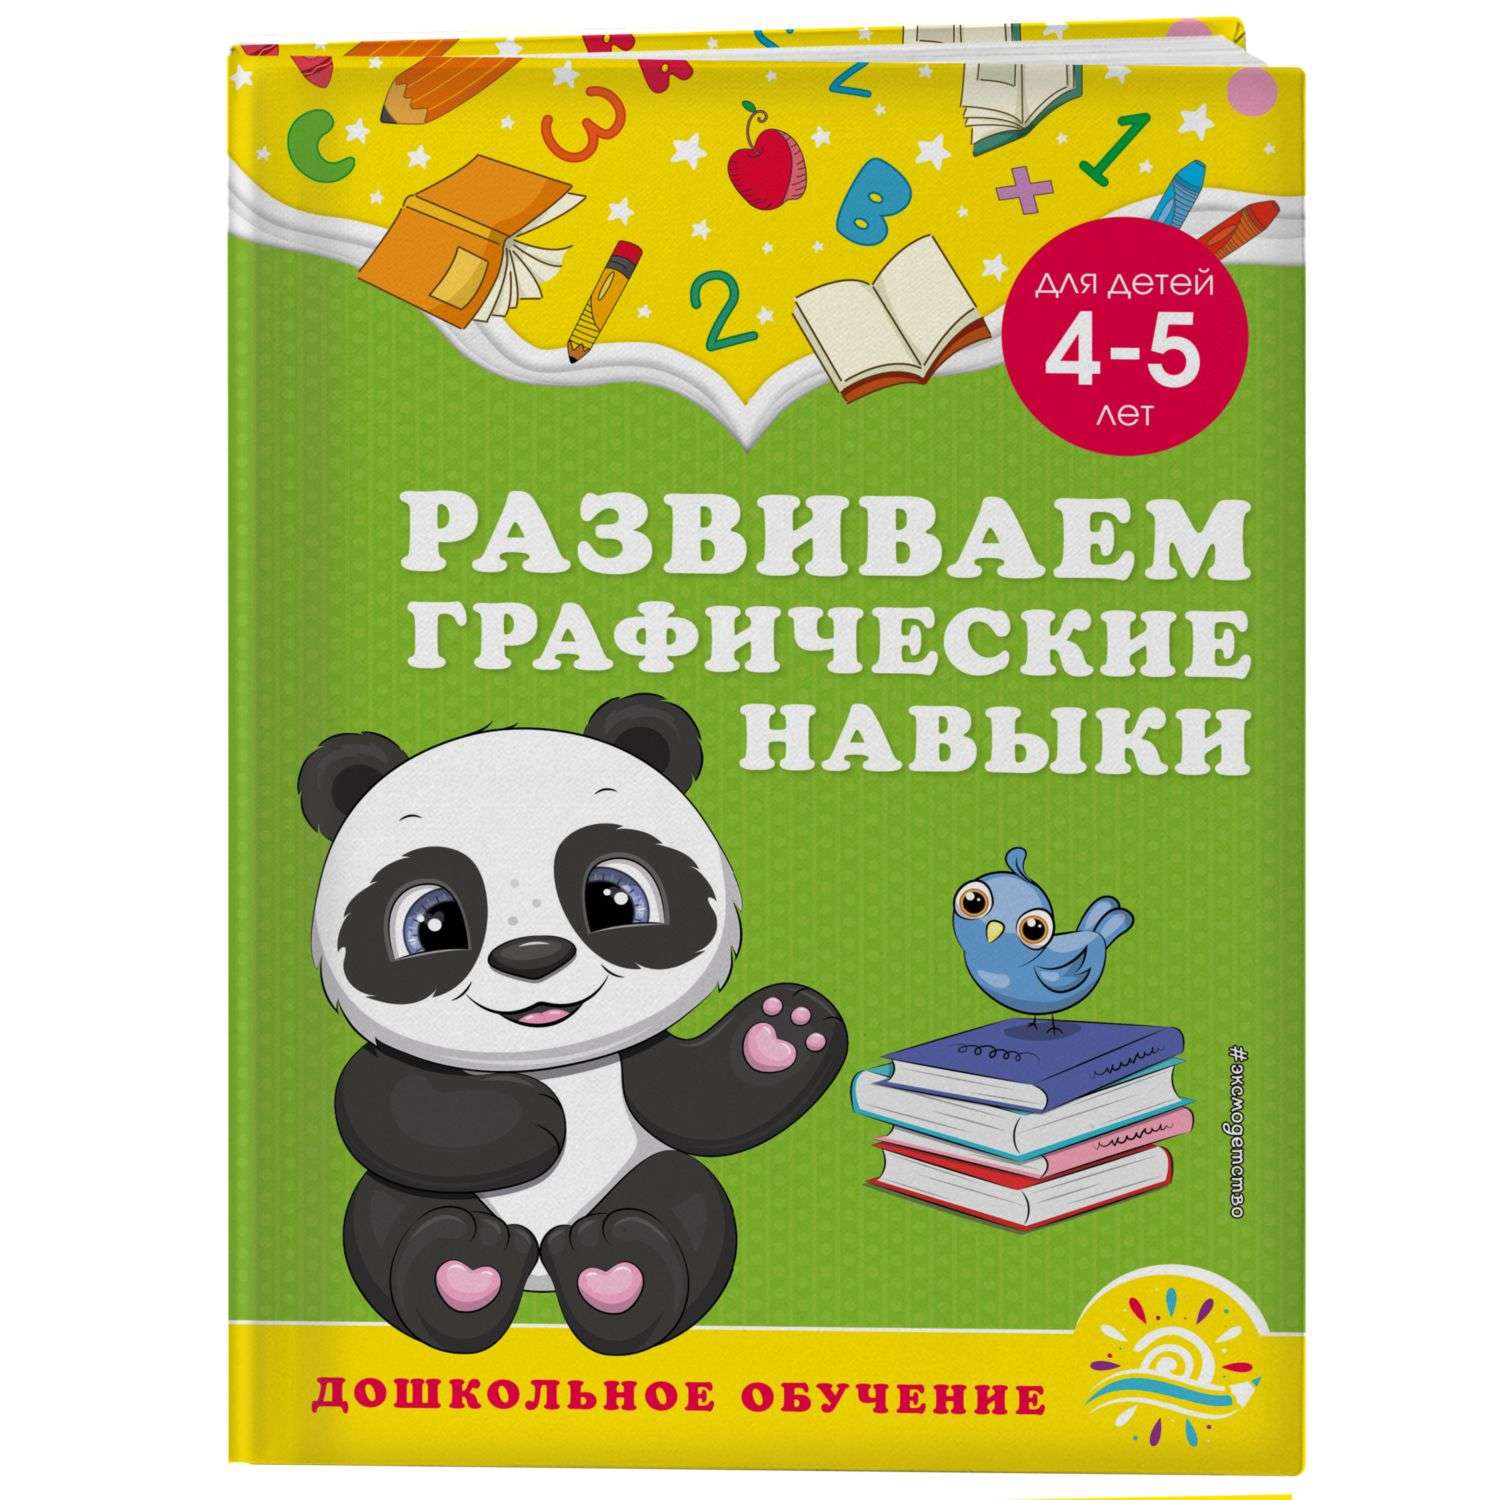 Книга Эксмо Развиваем графические навыки для детей 4-5лет - фото 1